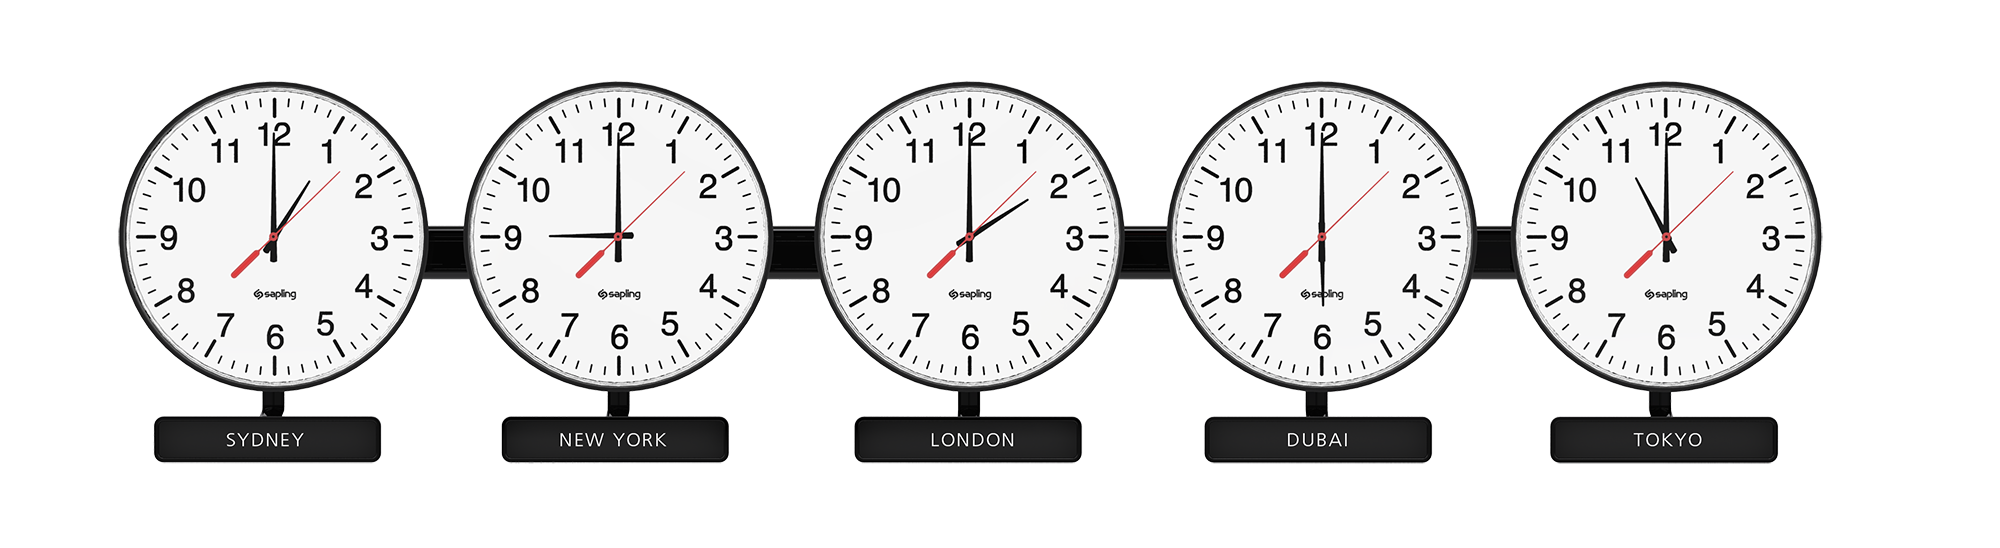 Мировые часы настенные. Часы настенные Разное время. Часы настенные мировое время. Циферблаты с разным временем.